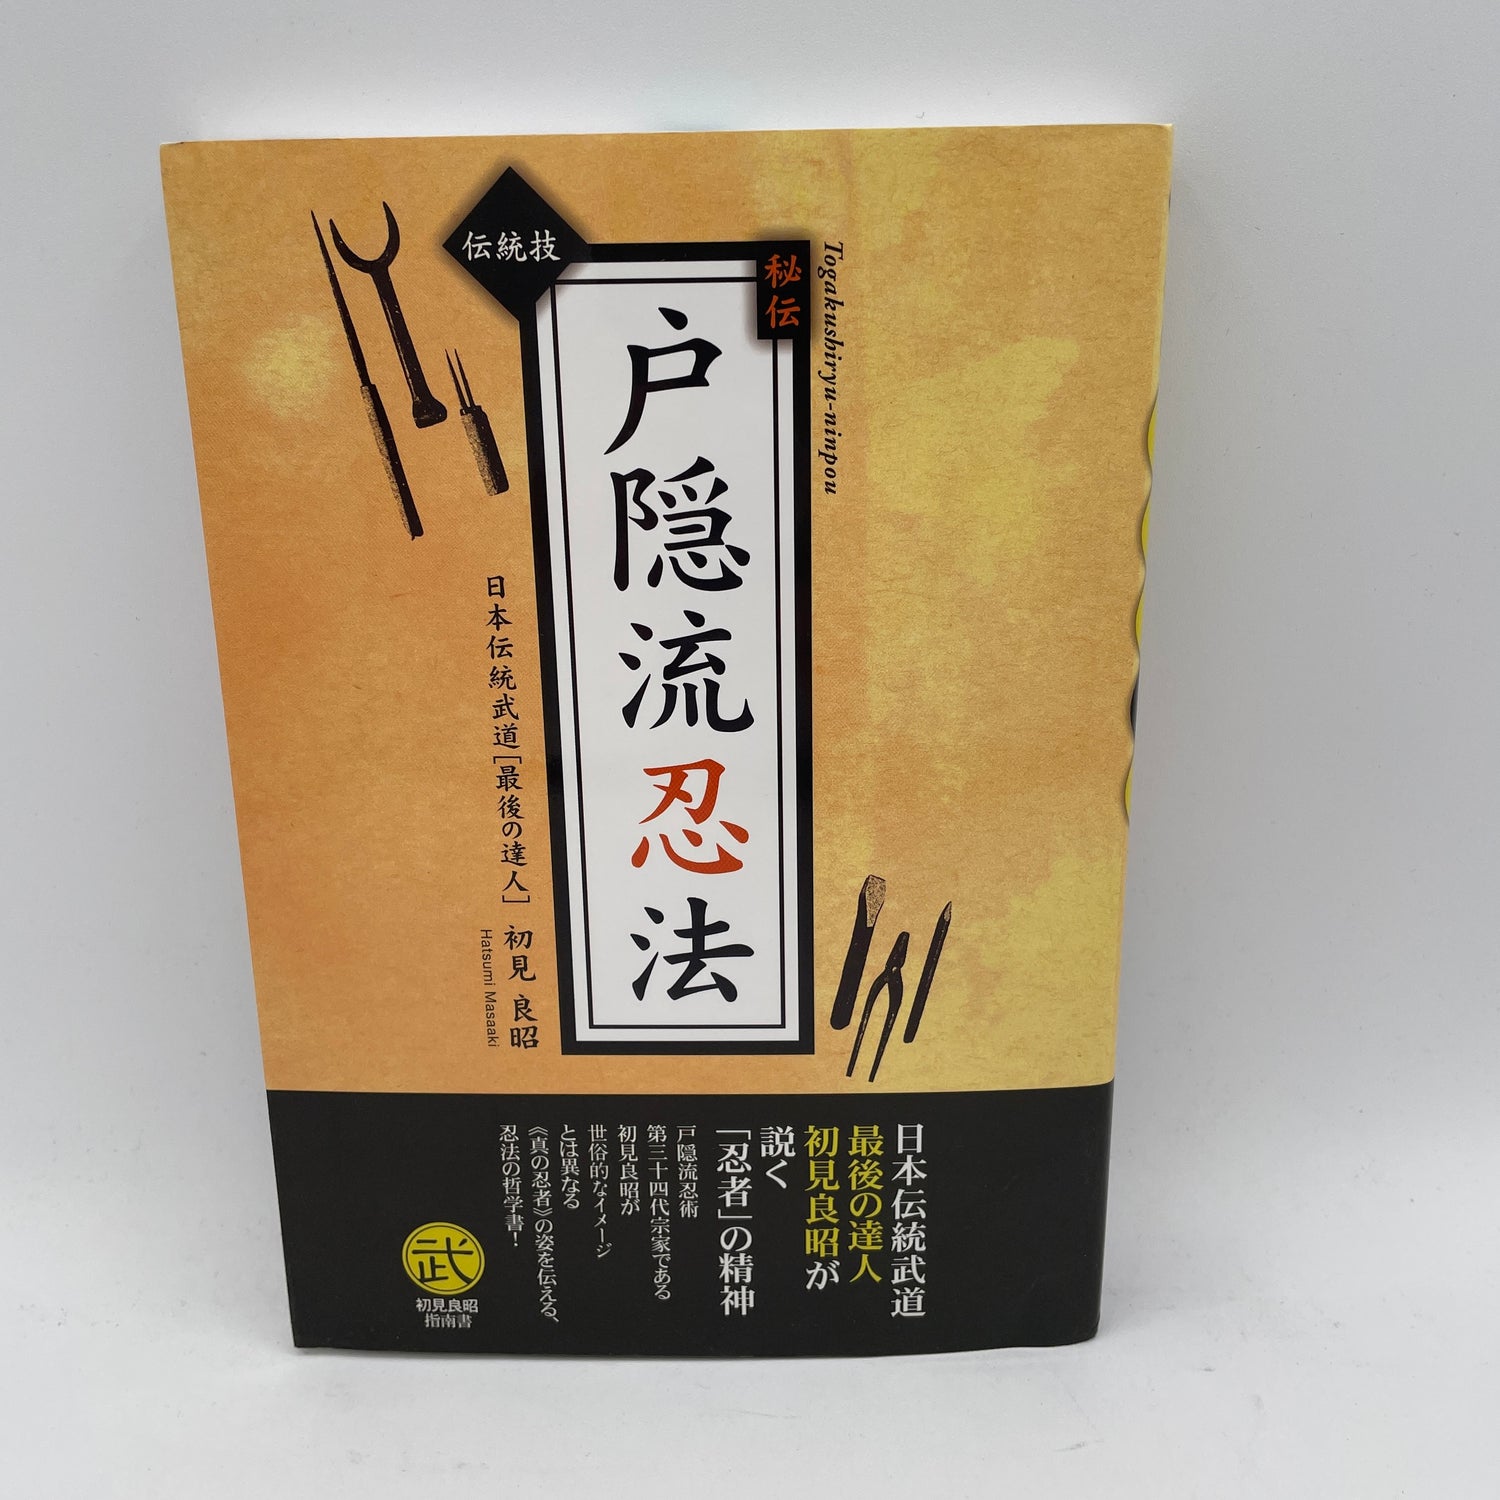 Togakure Ryu Ninpo Taijutsu Book by Masaaki Hatsumi